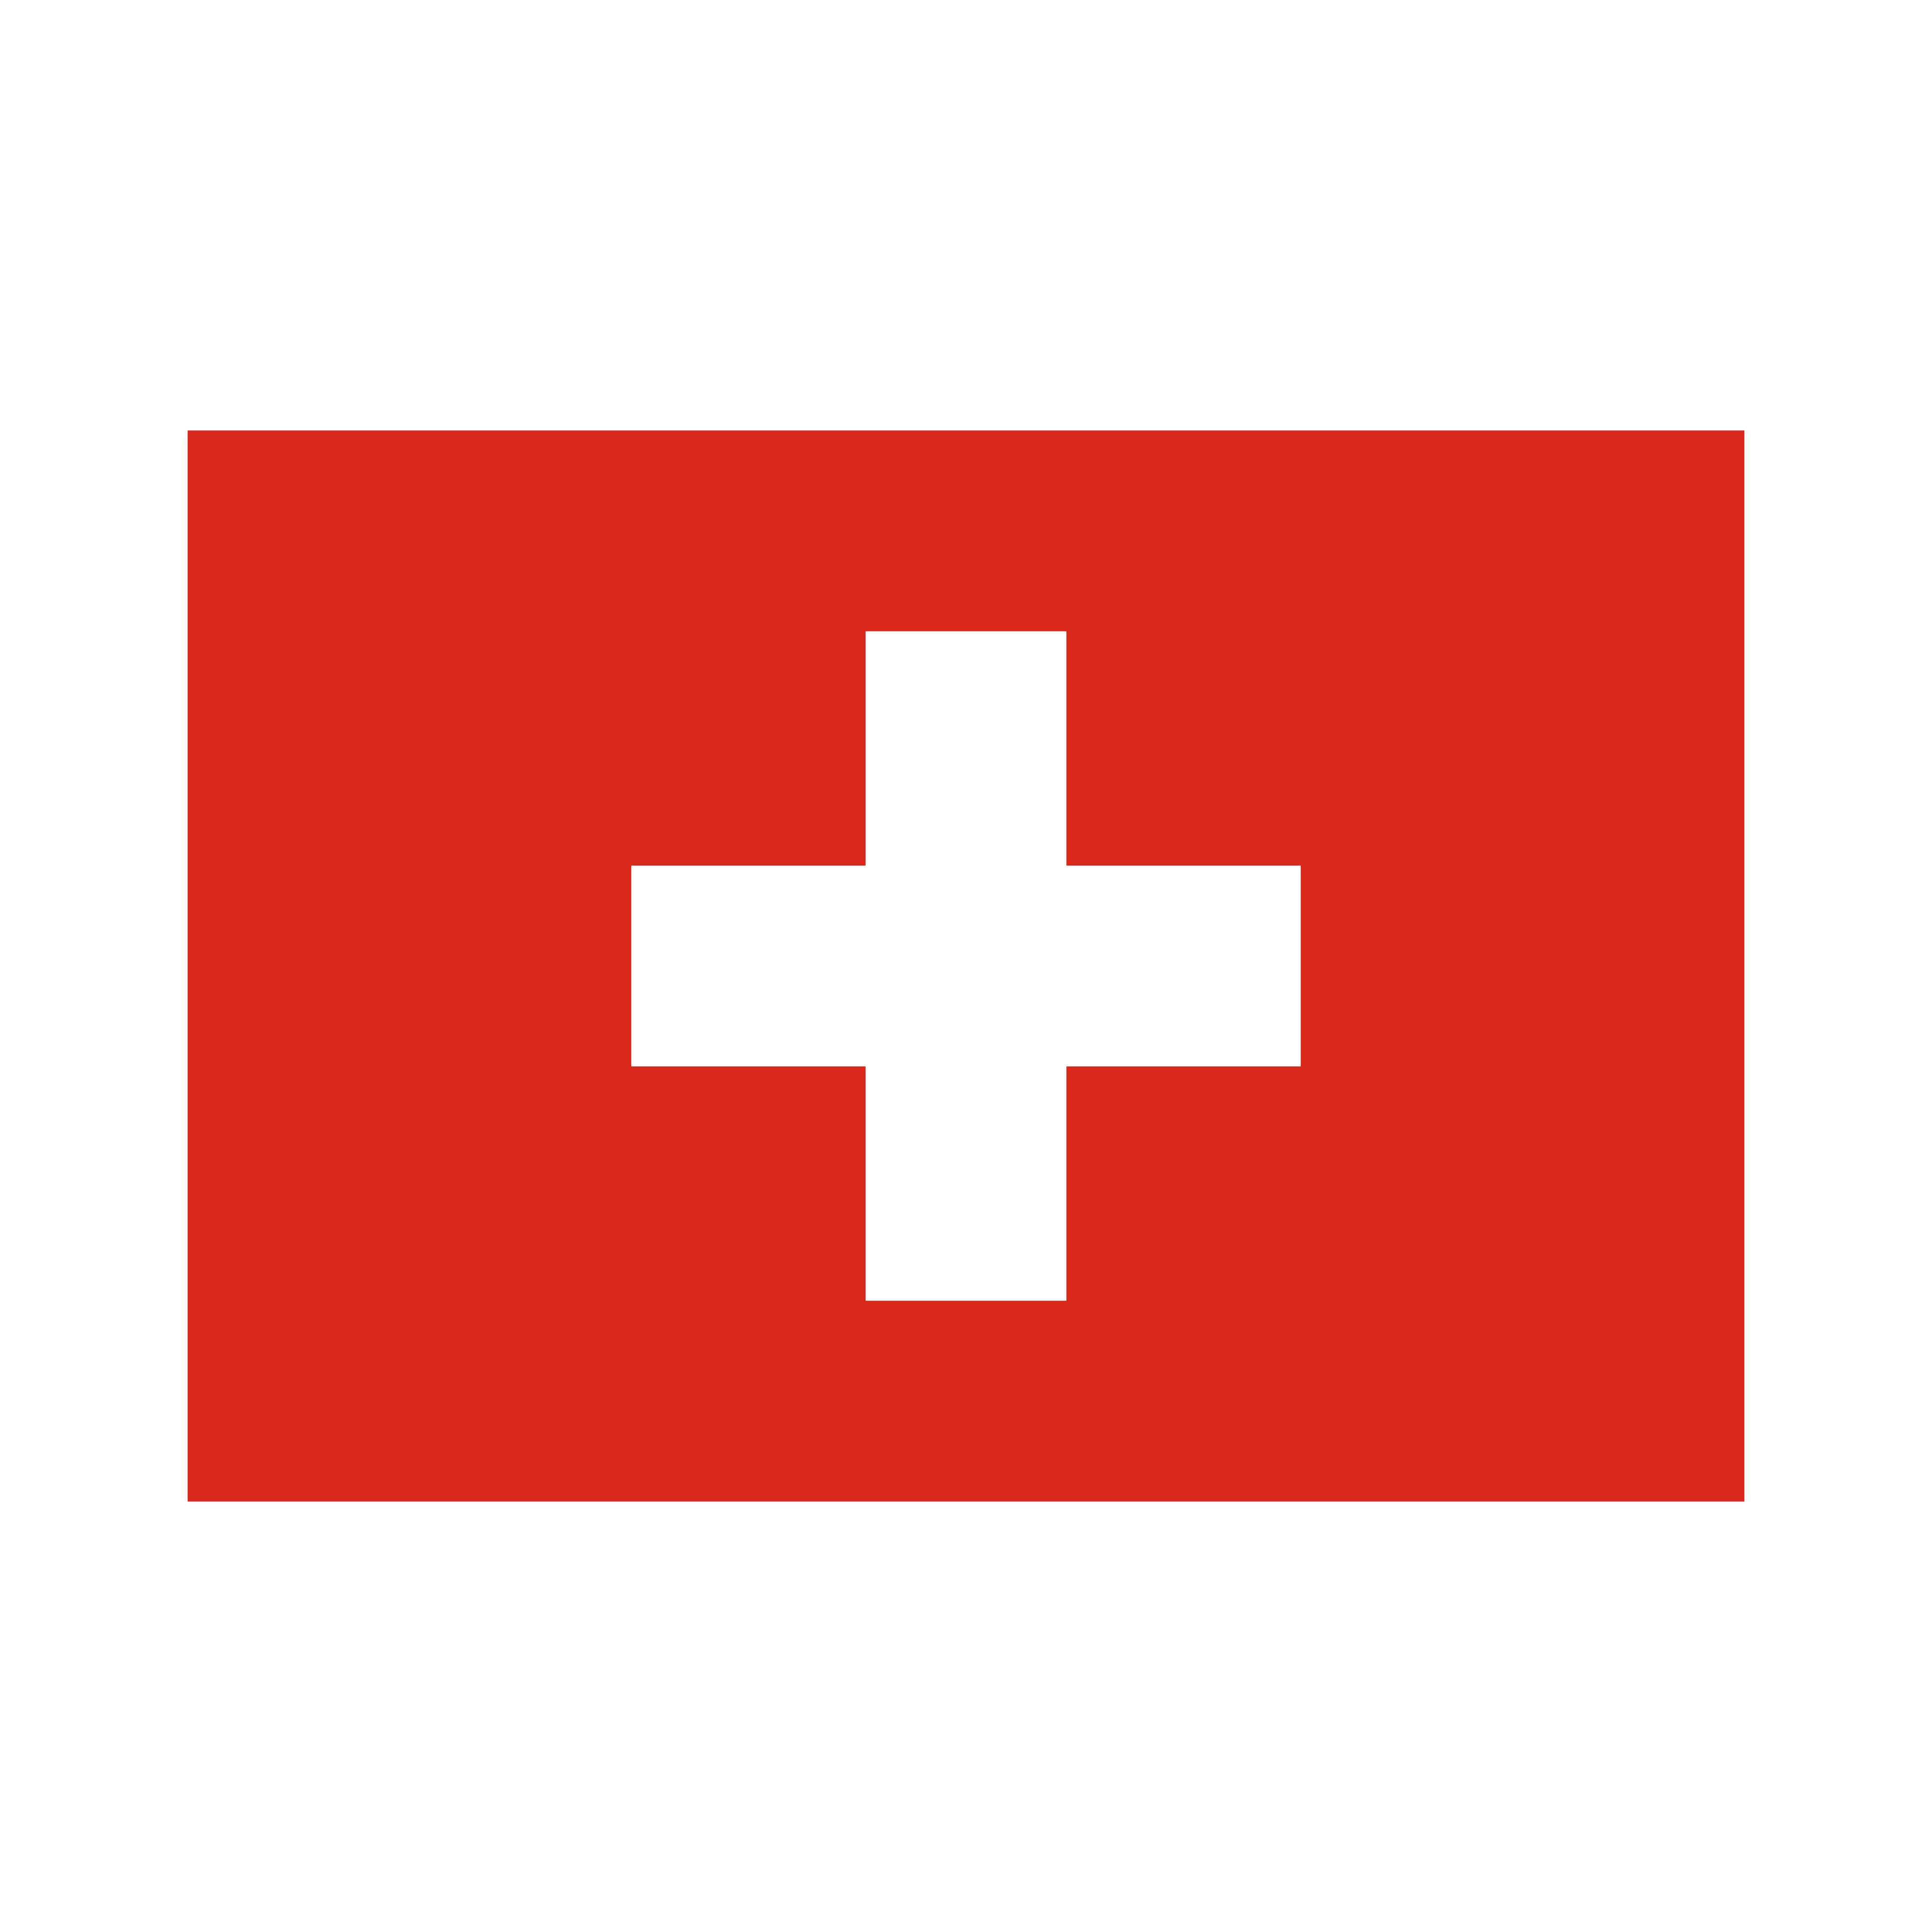 bandeira switzerland flag 0 - Drapeau de la Suisse